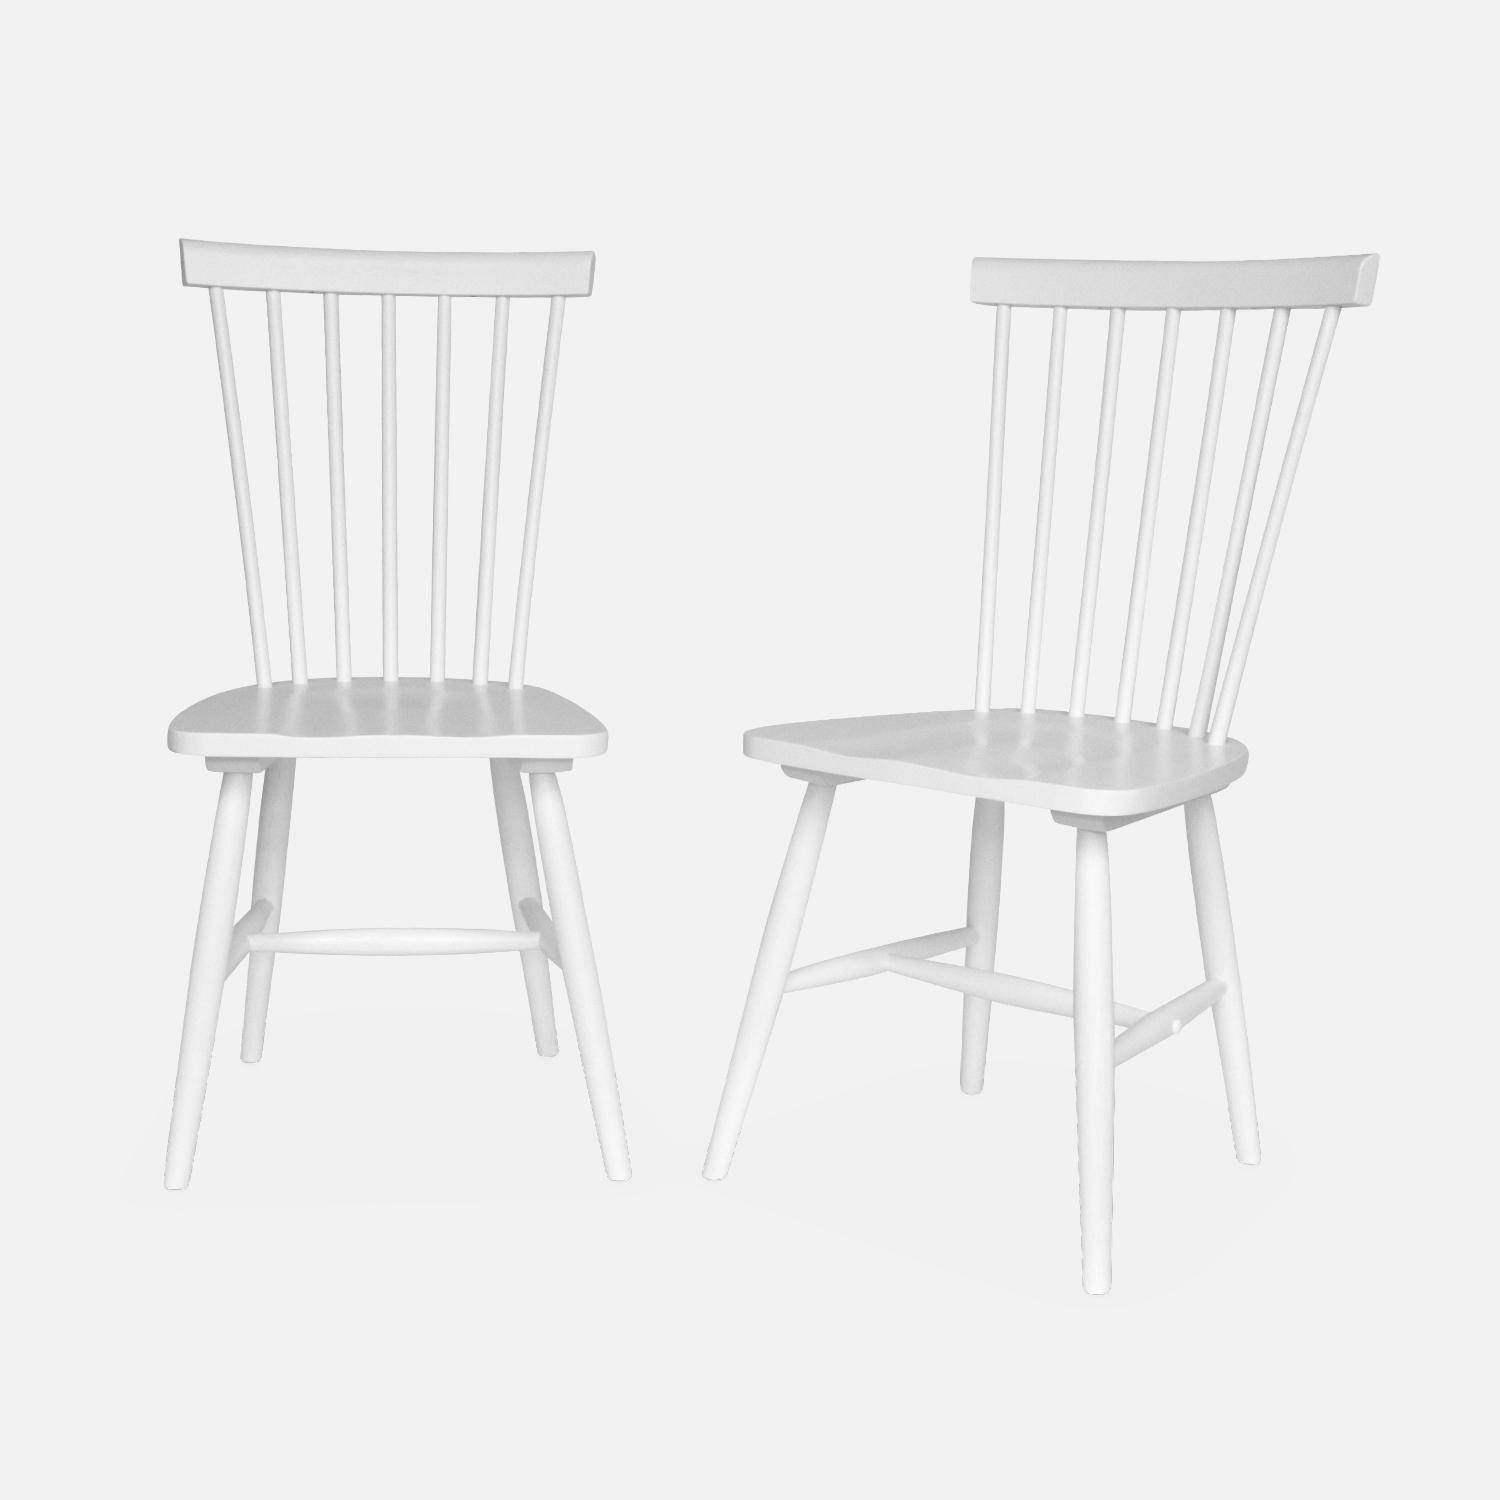 Set di 2 sedie da bar in legno di gomma bianco, ROMIE, L 50,8 x P 44,2 x H 90 cm. Consegna gratuita, garanzia di 2 anni, miglior prezzo garantito! Photo3